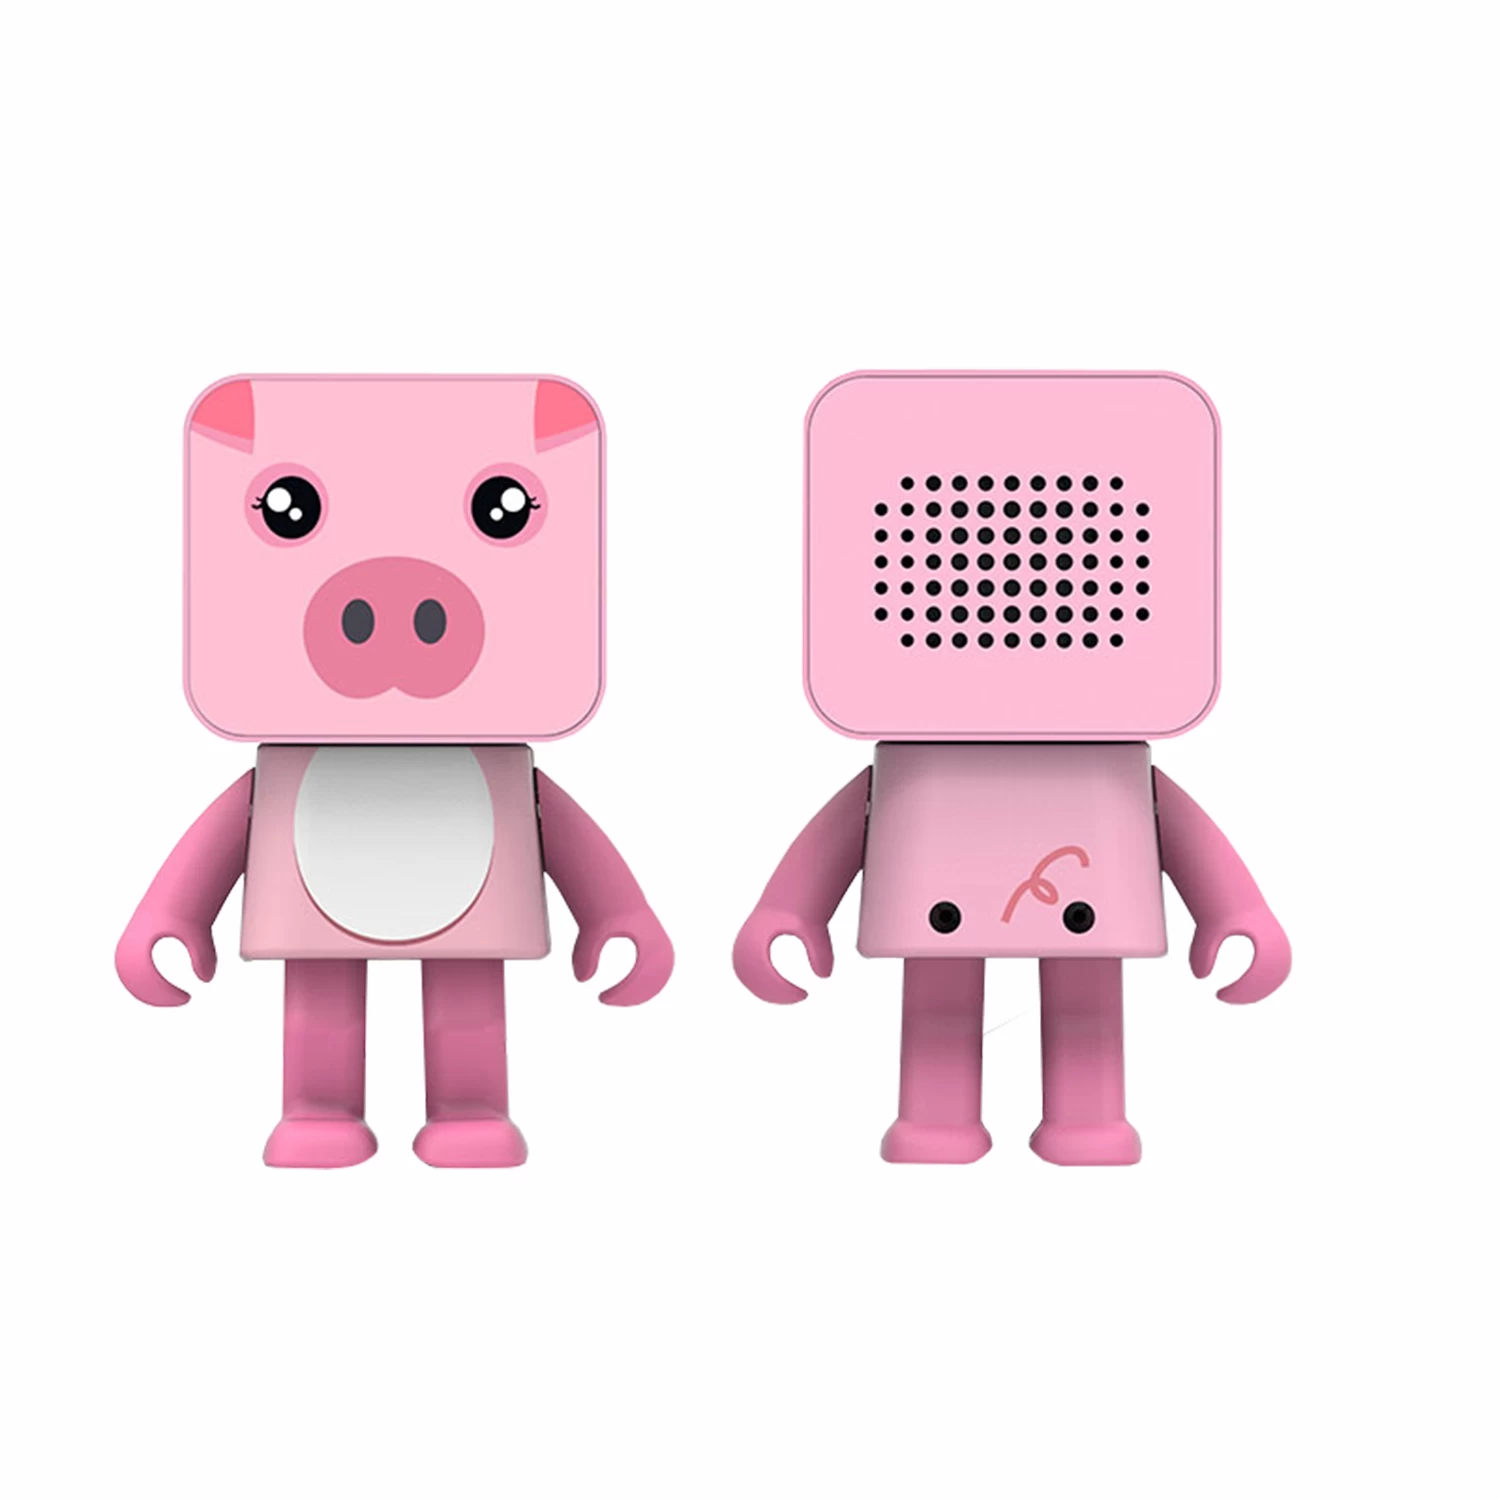 小方猪机器人音箱 NSP-228A